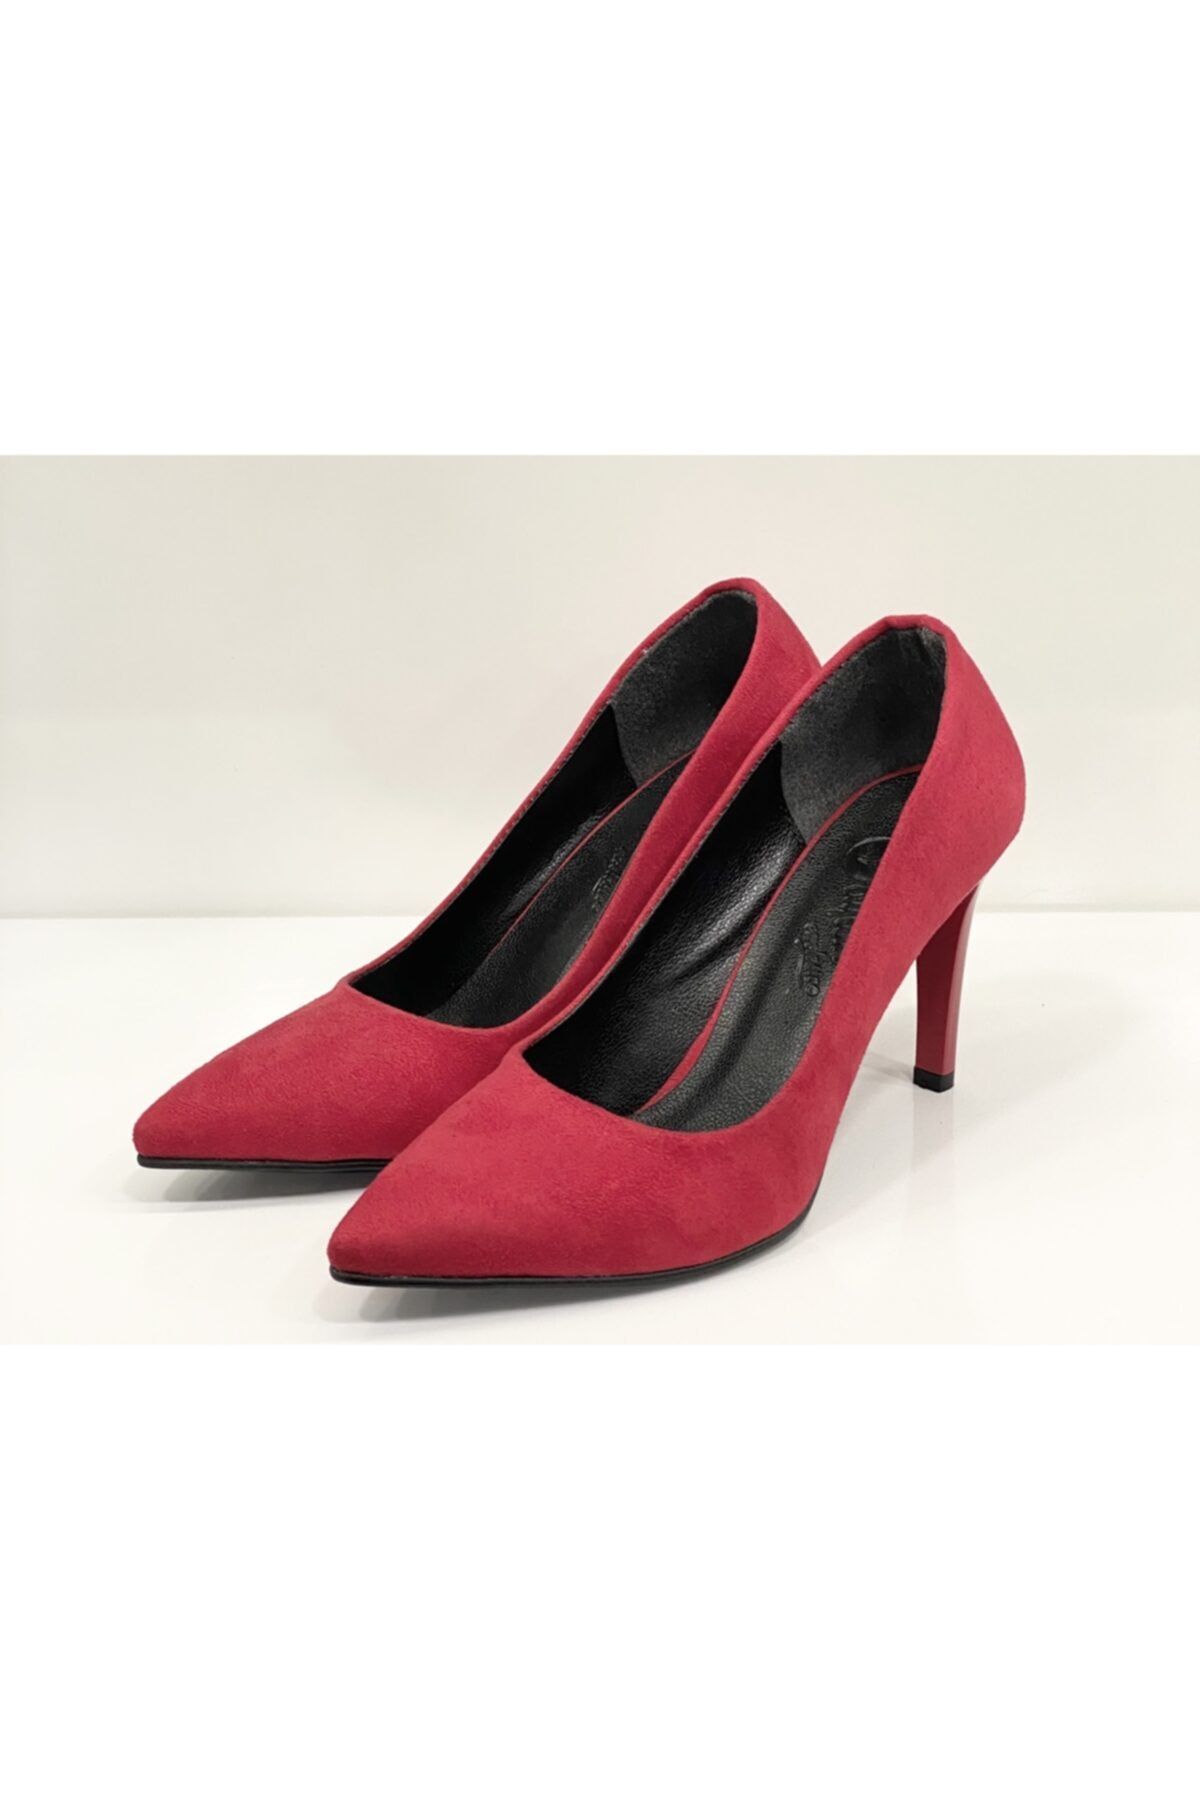 defile ayakkabi Kadın Kırmızı Süet Stiletto